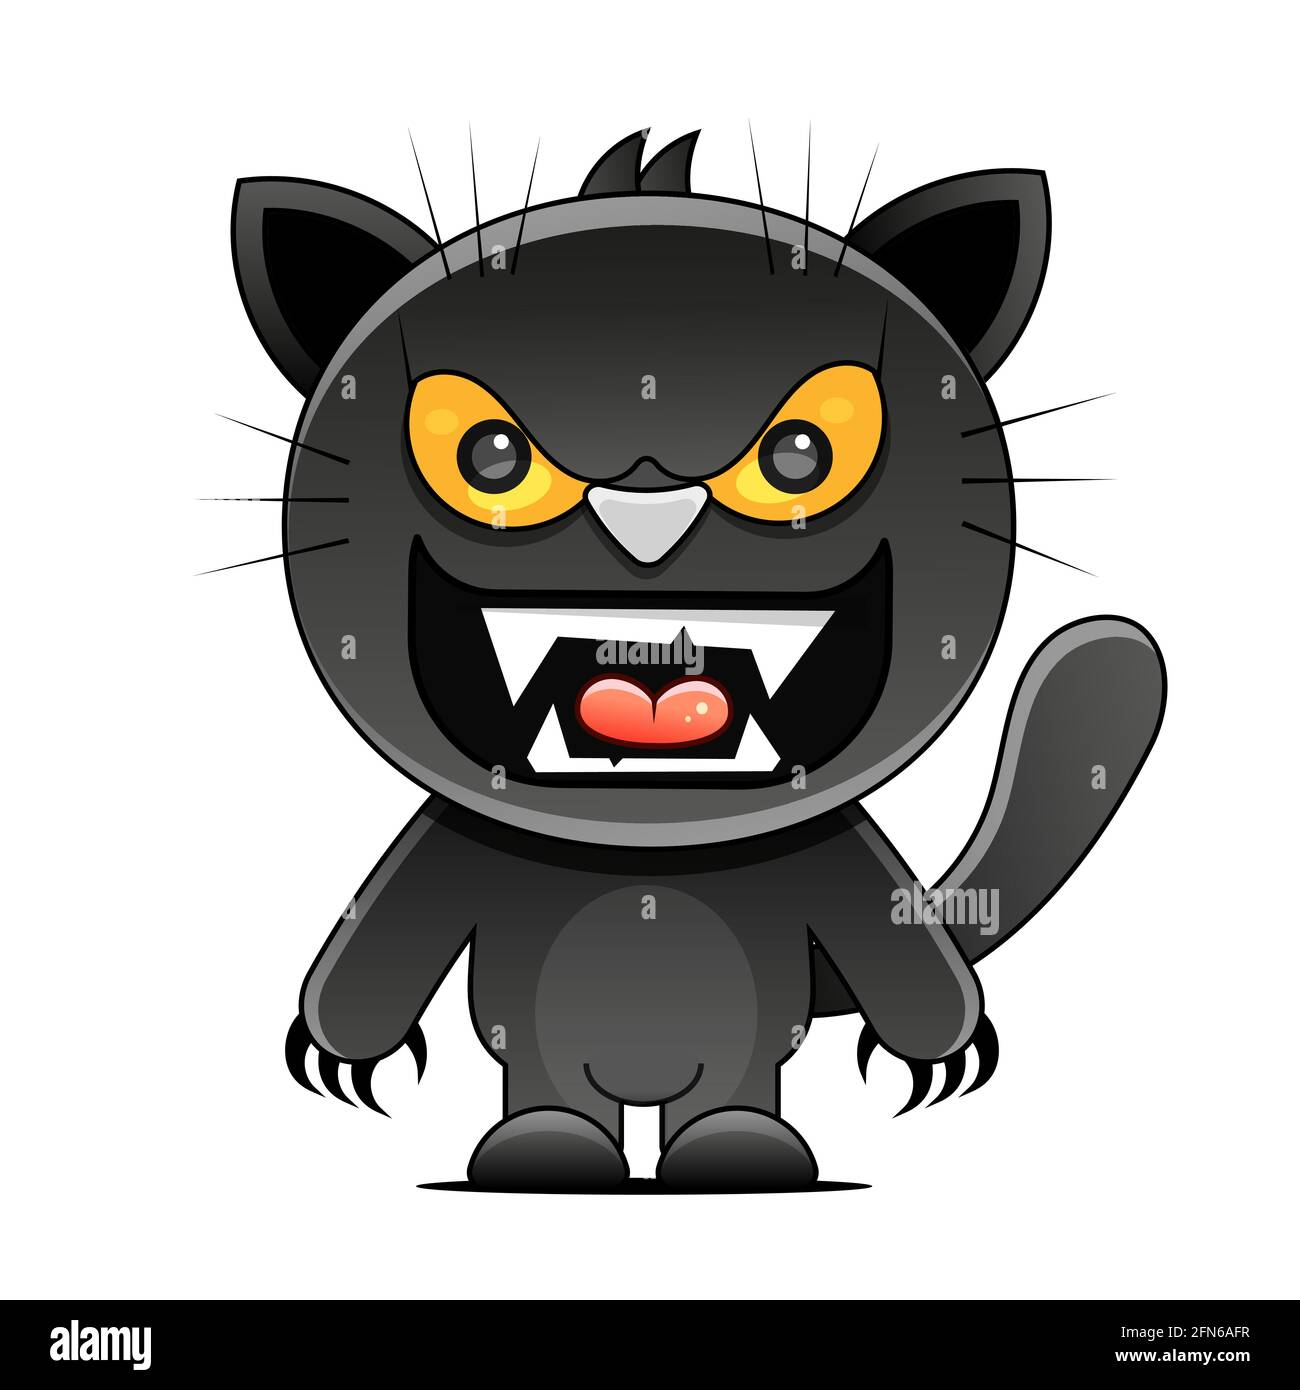 Vendredi 13 grunge illustration avec chiffres et chat noir. Superstition vectorielle mystique Illustration de Vecteur